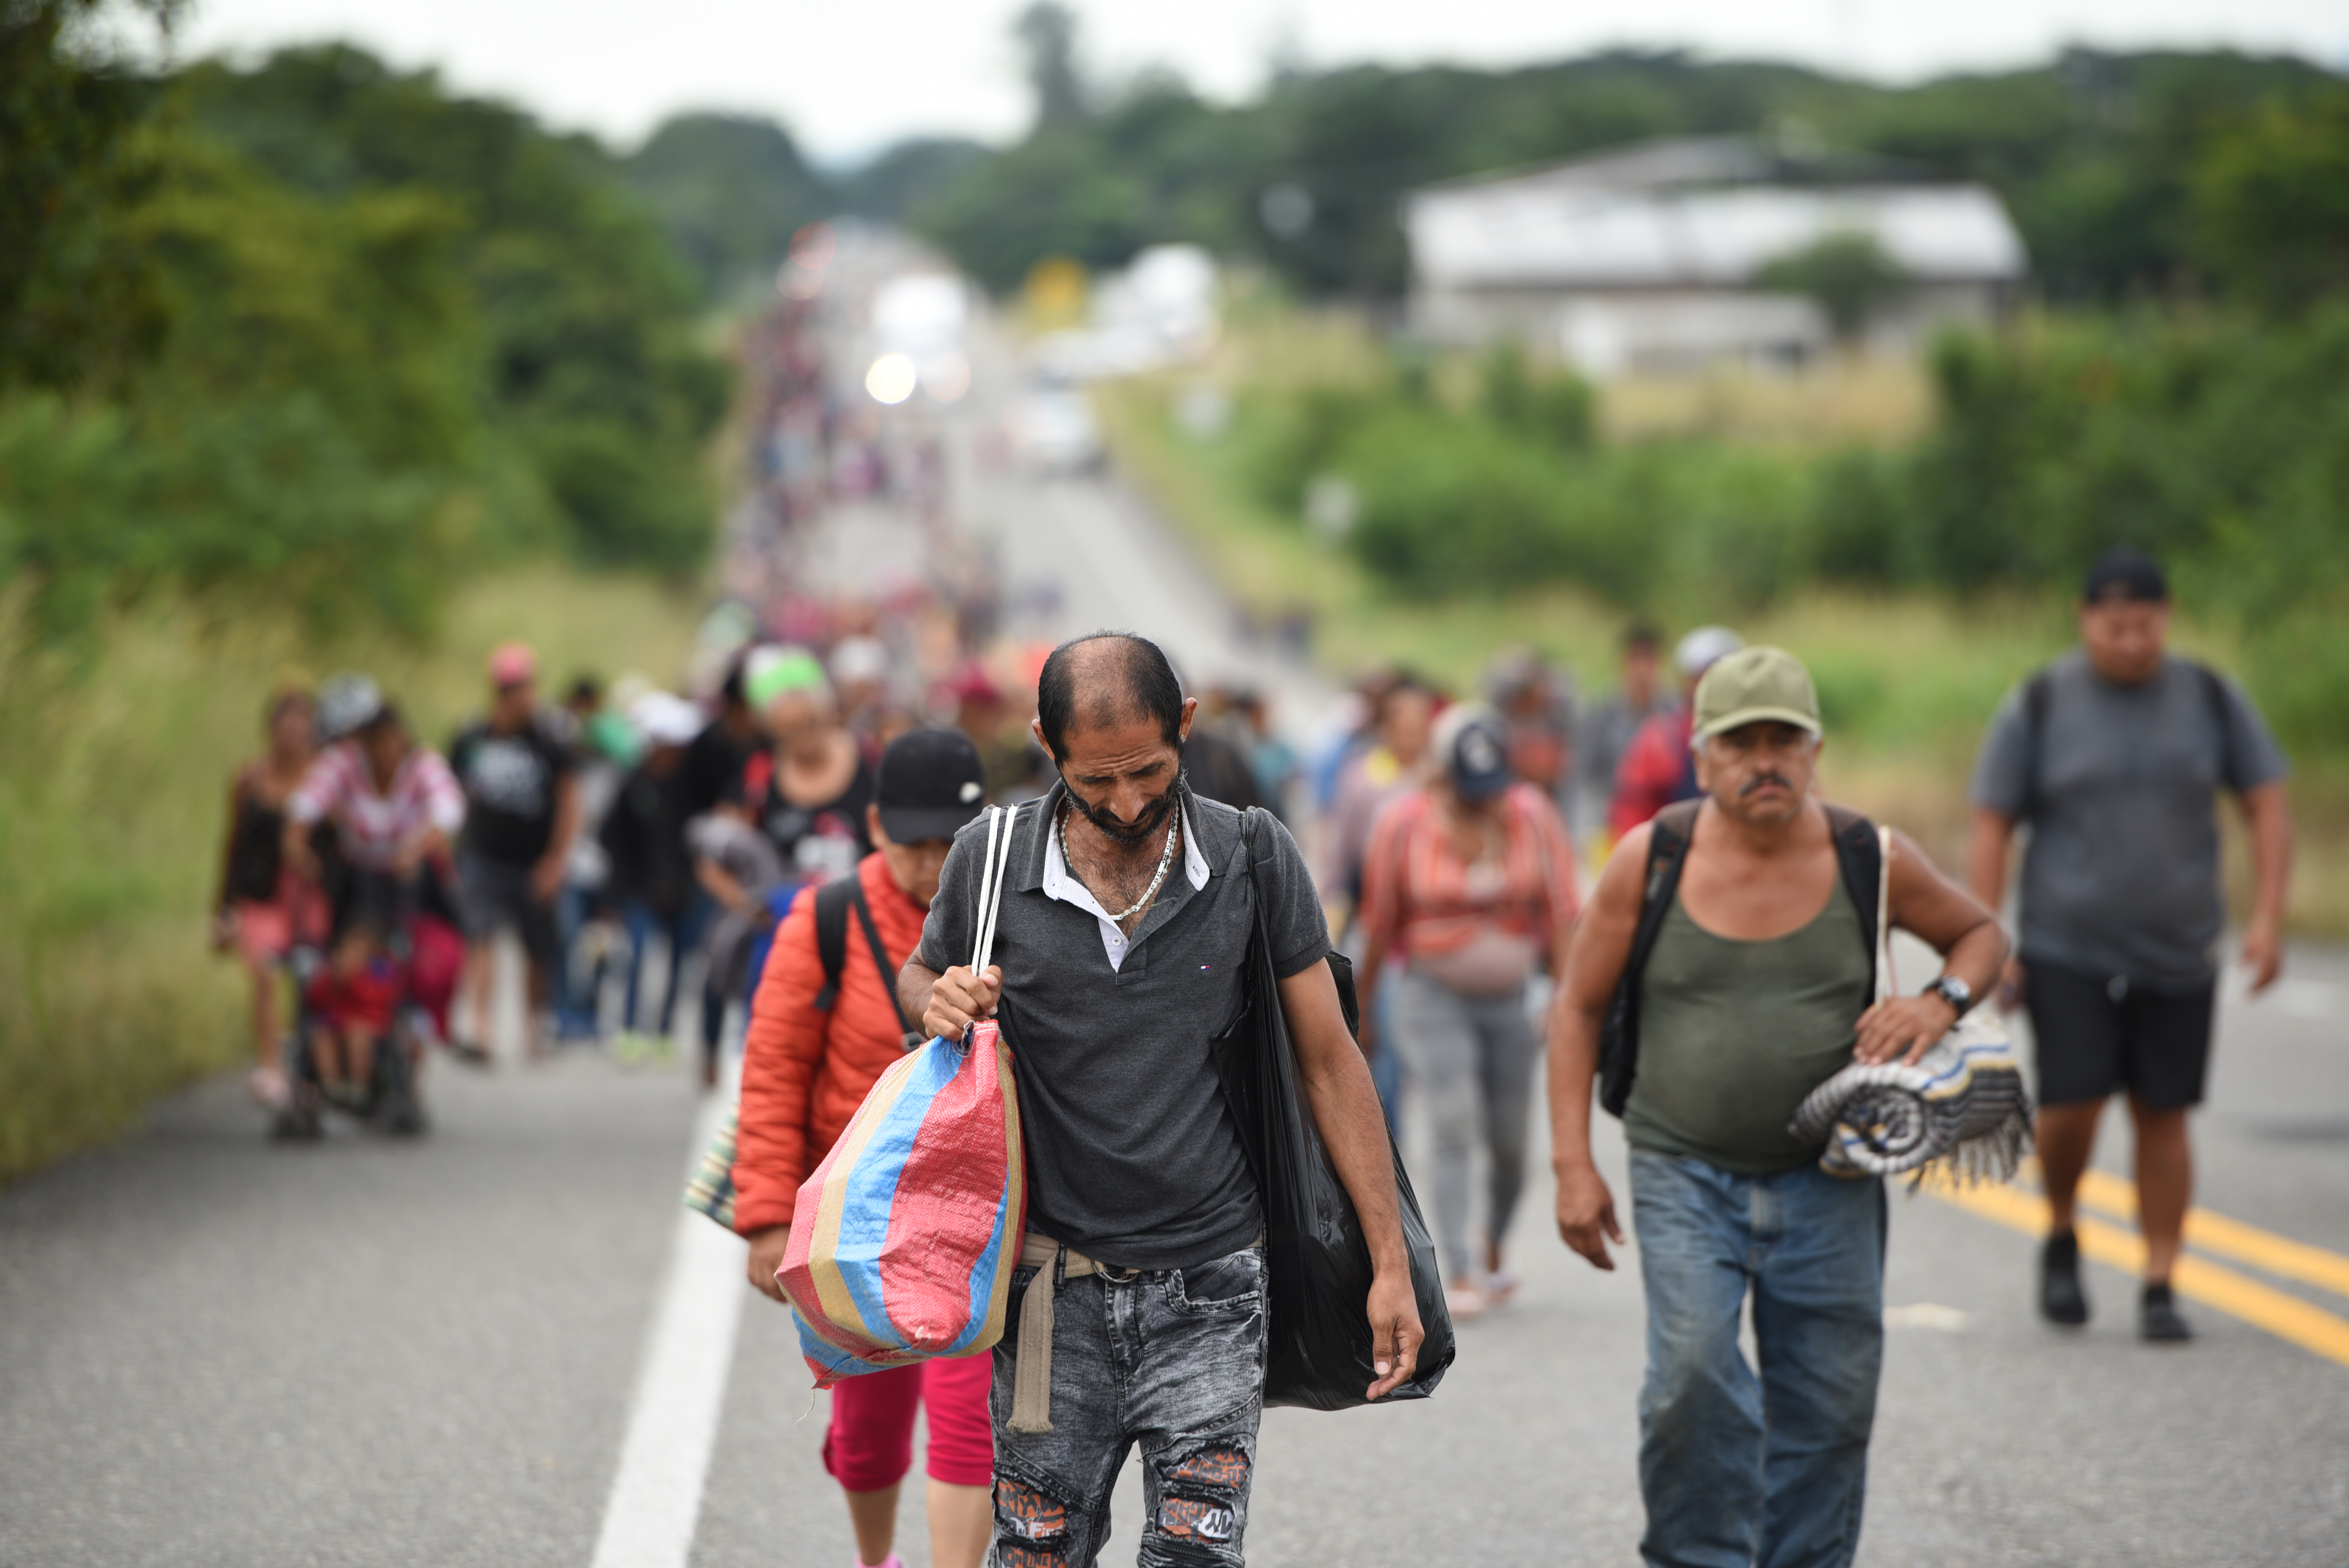 العديد من الناس من أمريكا الوسطى يسيرون معا على طول الطريق الريفي نحو الحدود الأمريكية(د ب أ)